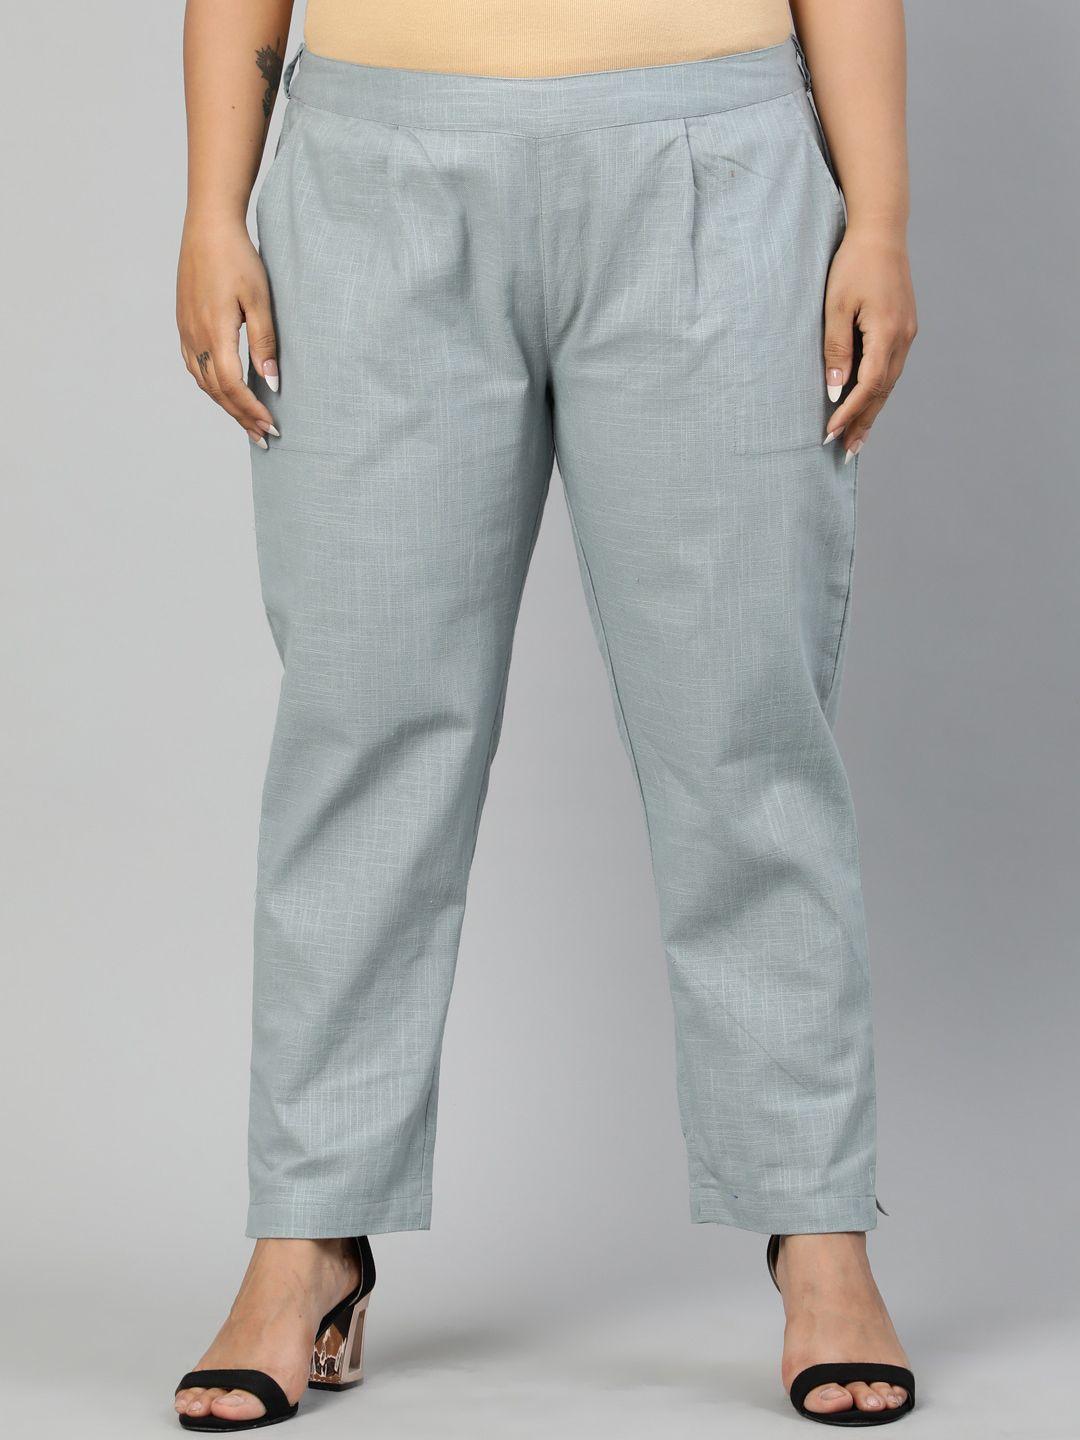 jaipur-kurti-plus-size-women-grey-solid-regular-trousers